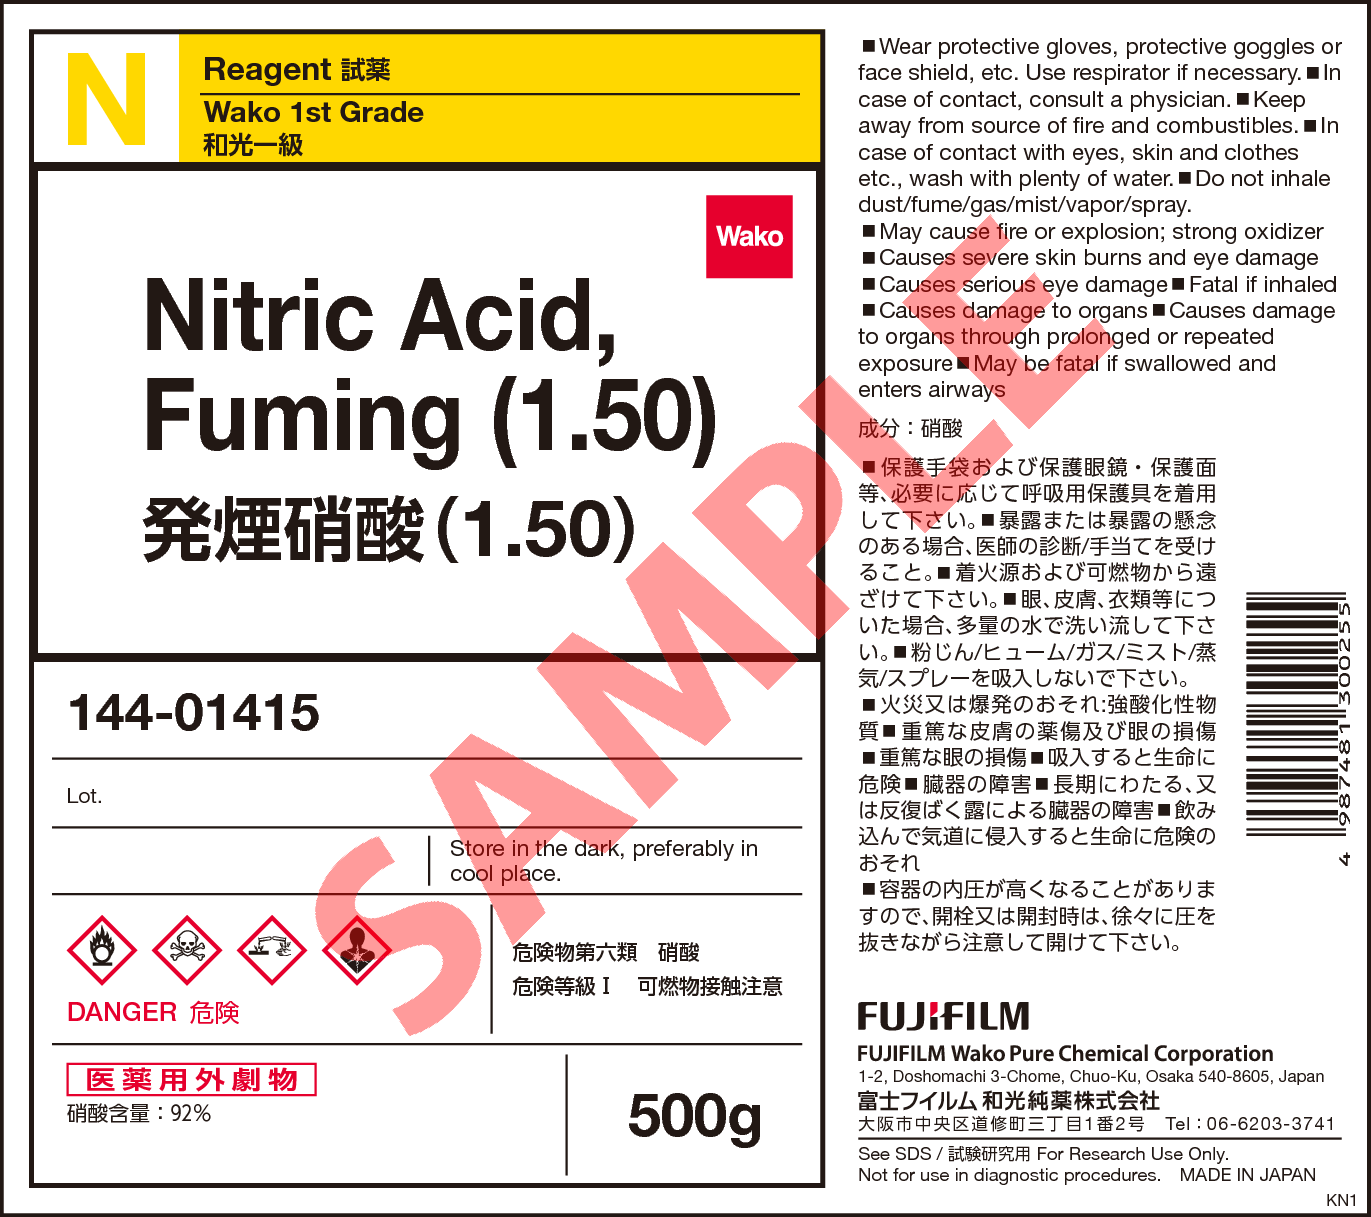 発煙硝酸 (1.50) Nitric Acid, Fuming (1.50)